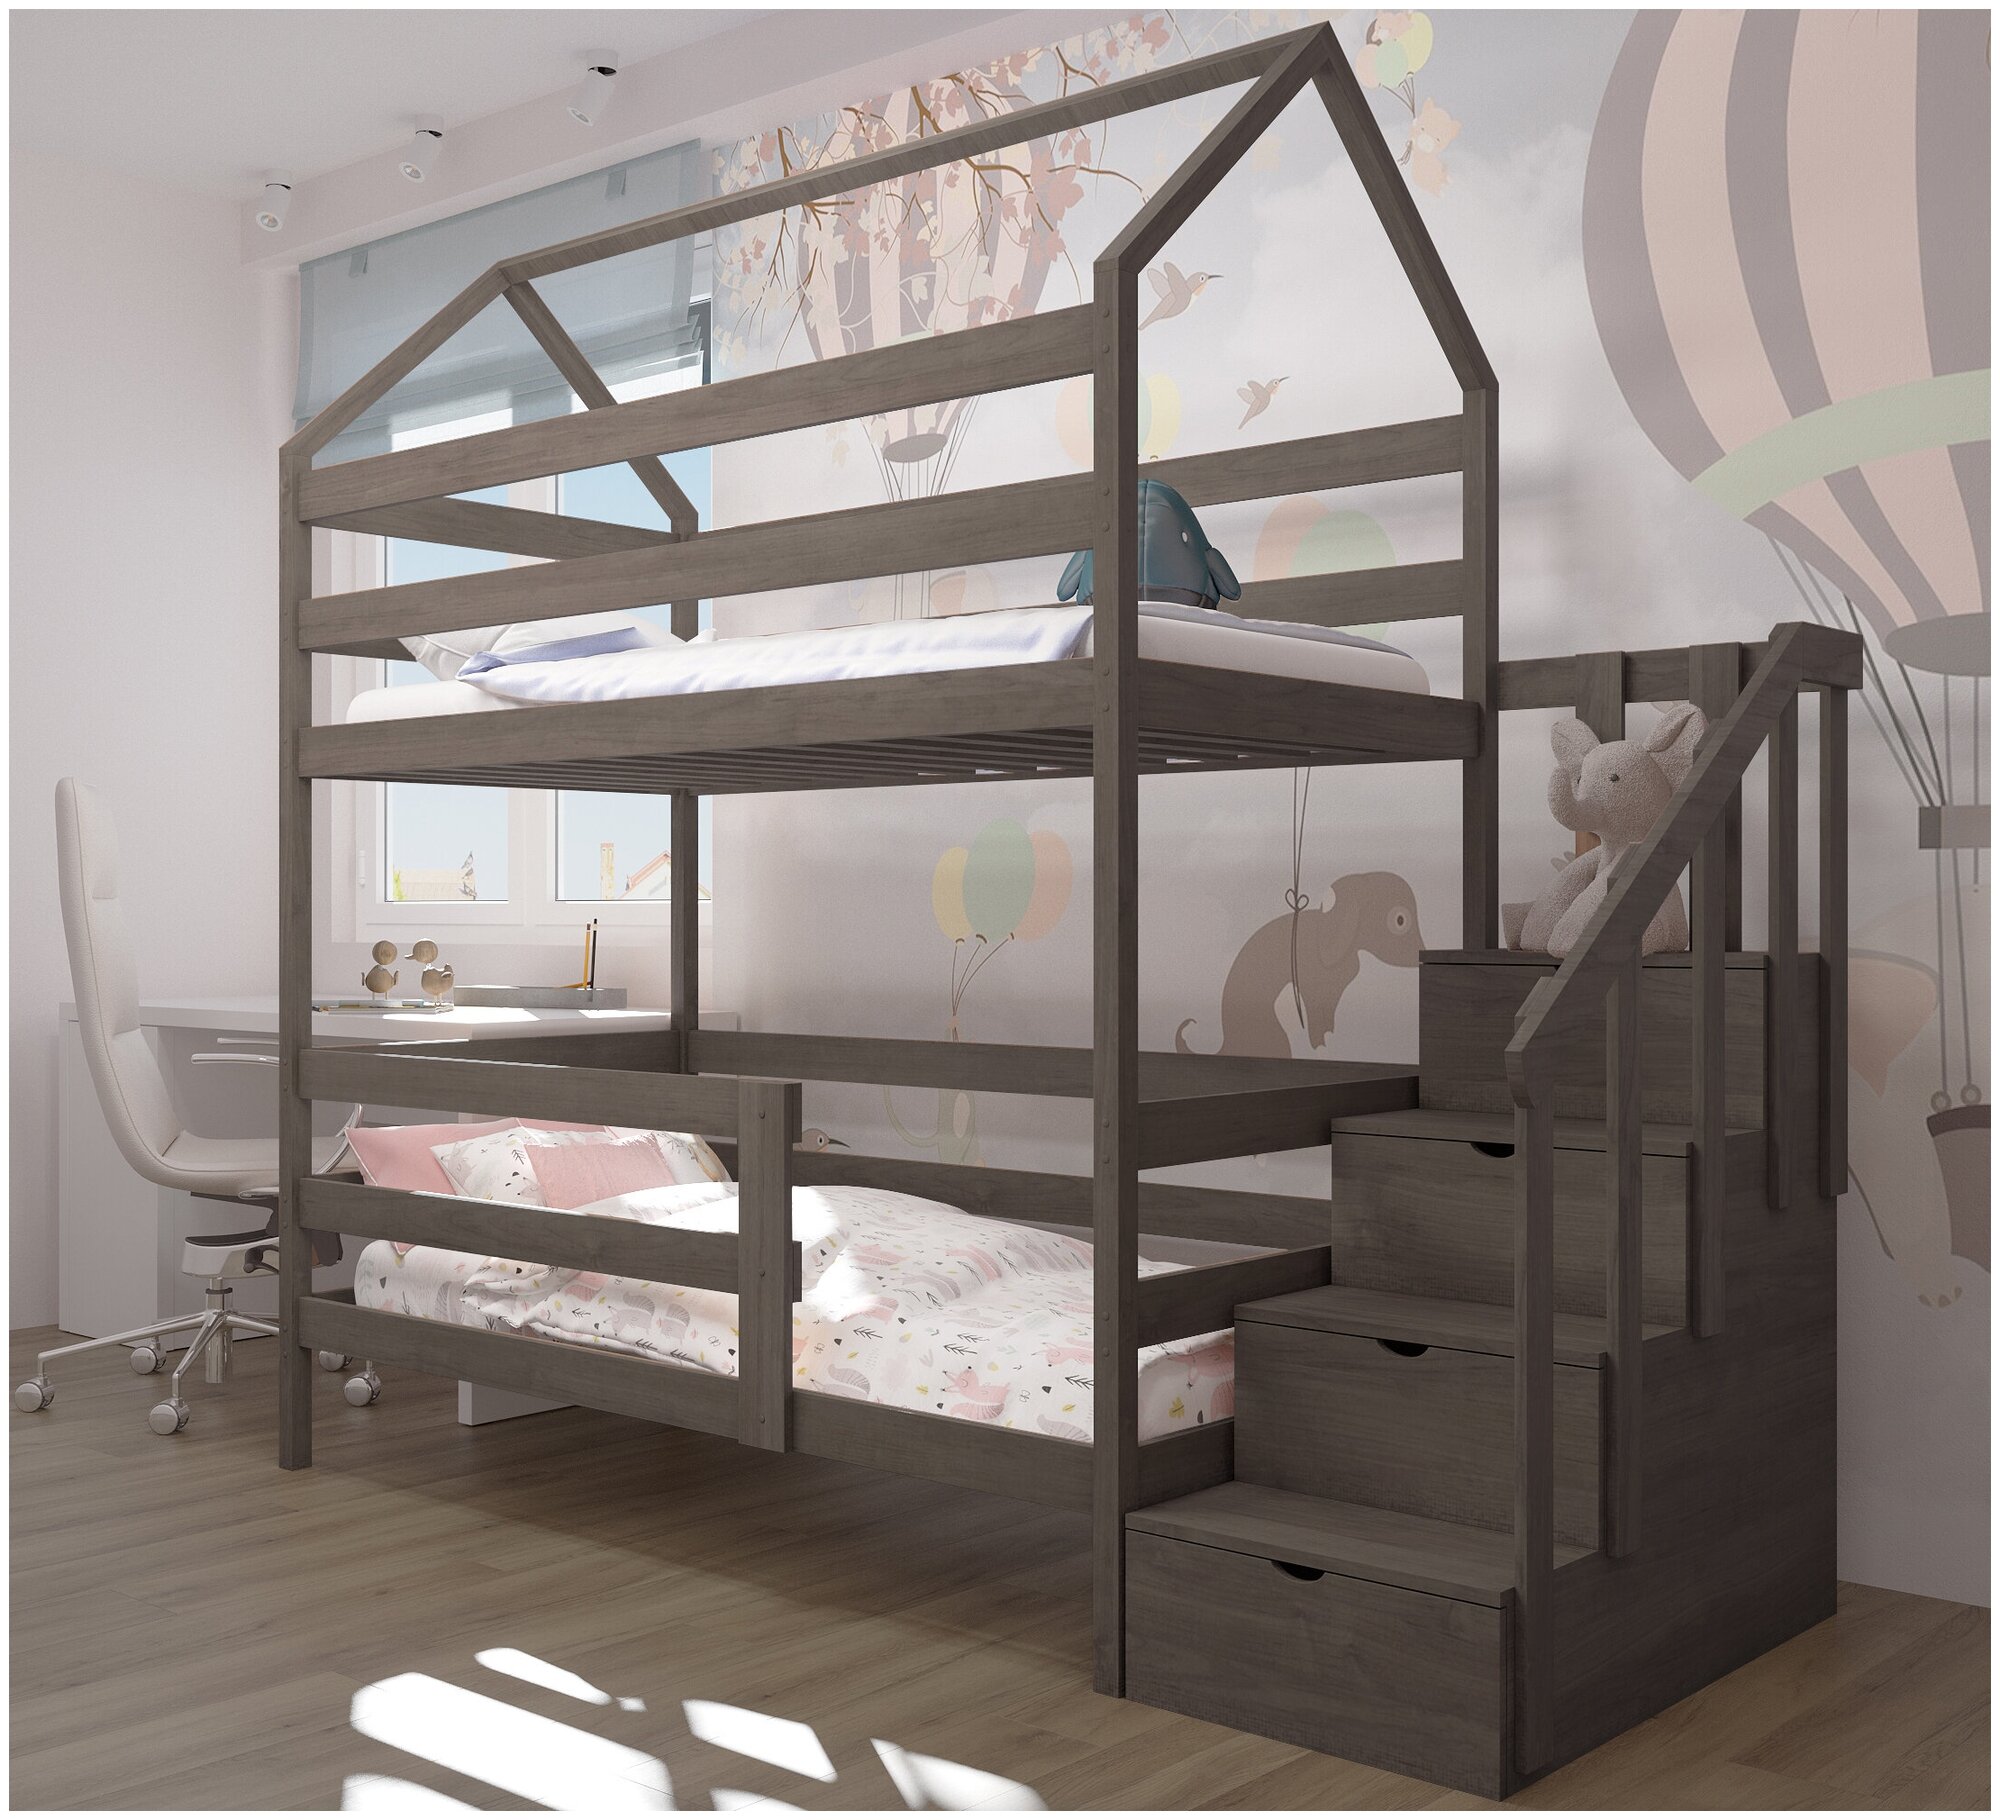 Кровать детская, подростковая "Двухъярусная с лестницей-комодом", спальное место 180х90, масло "Асфальт", из массива